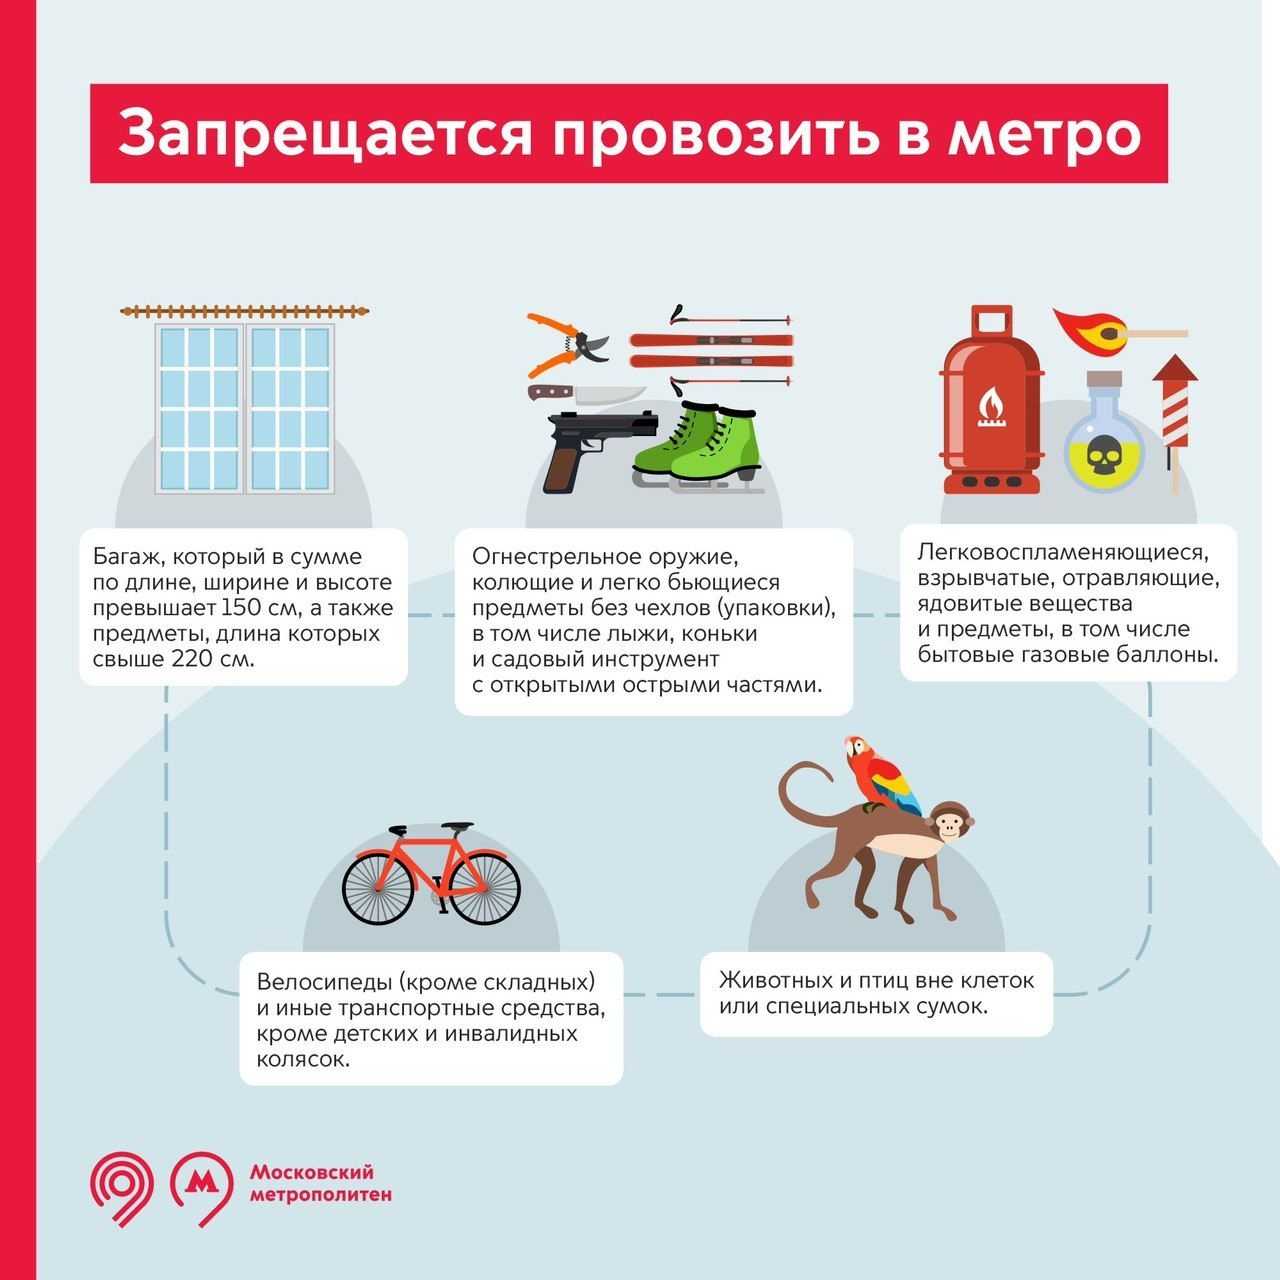 Как провозить велосипед в метро